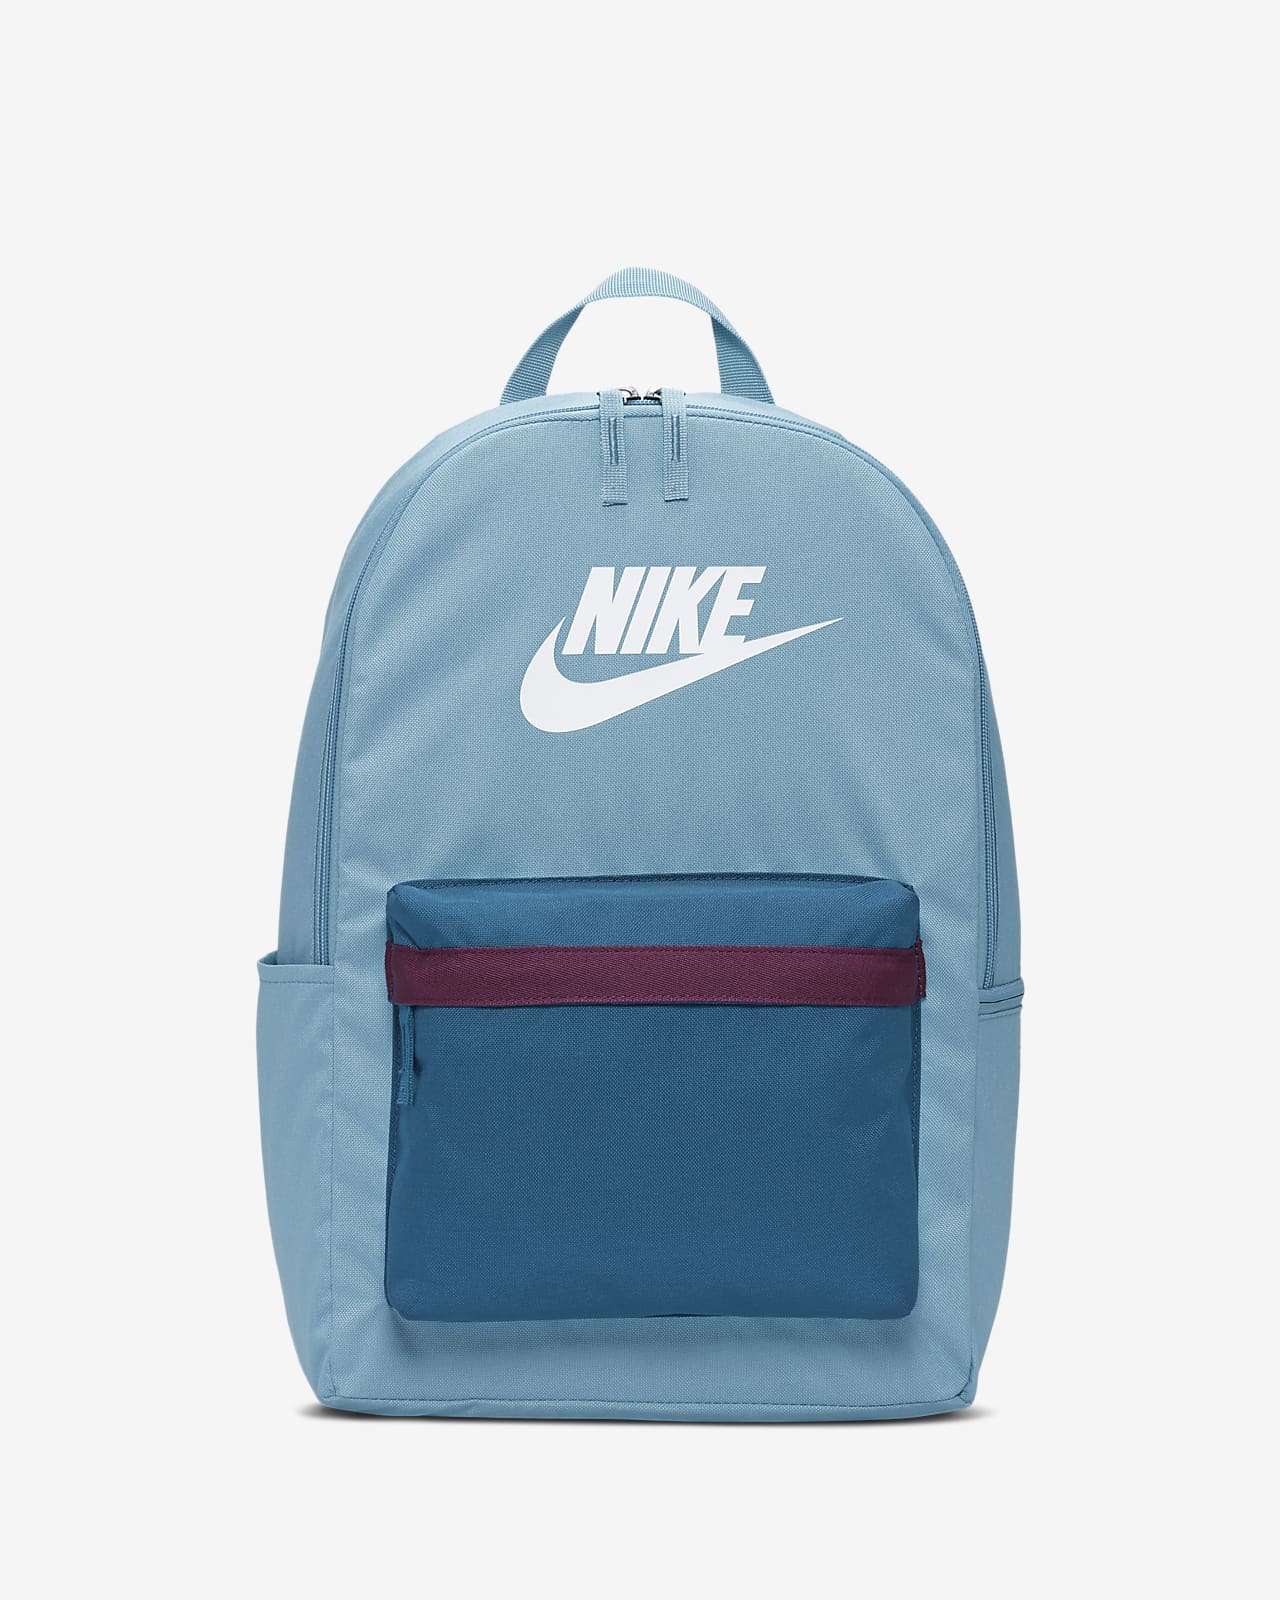 light blue backpack nike